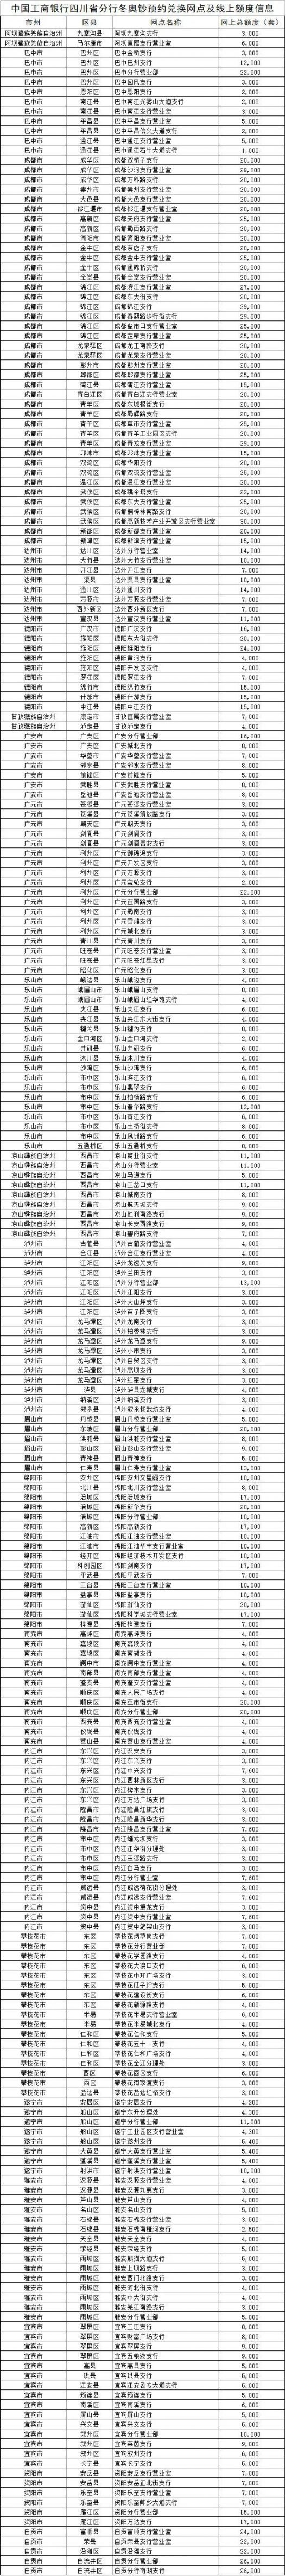 中国工商银行冬奥会纪念钞四川地区预约公告